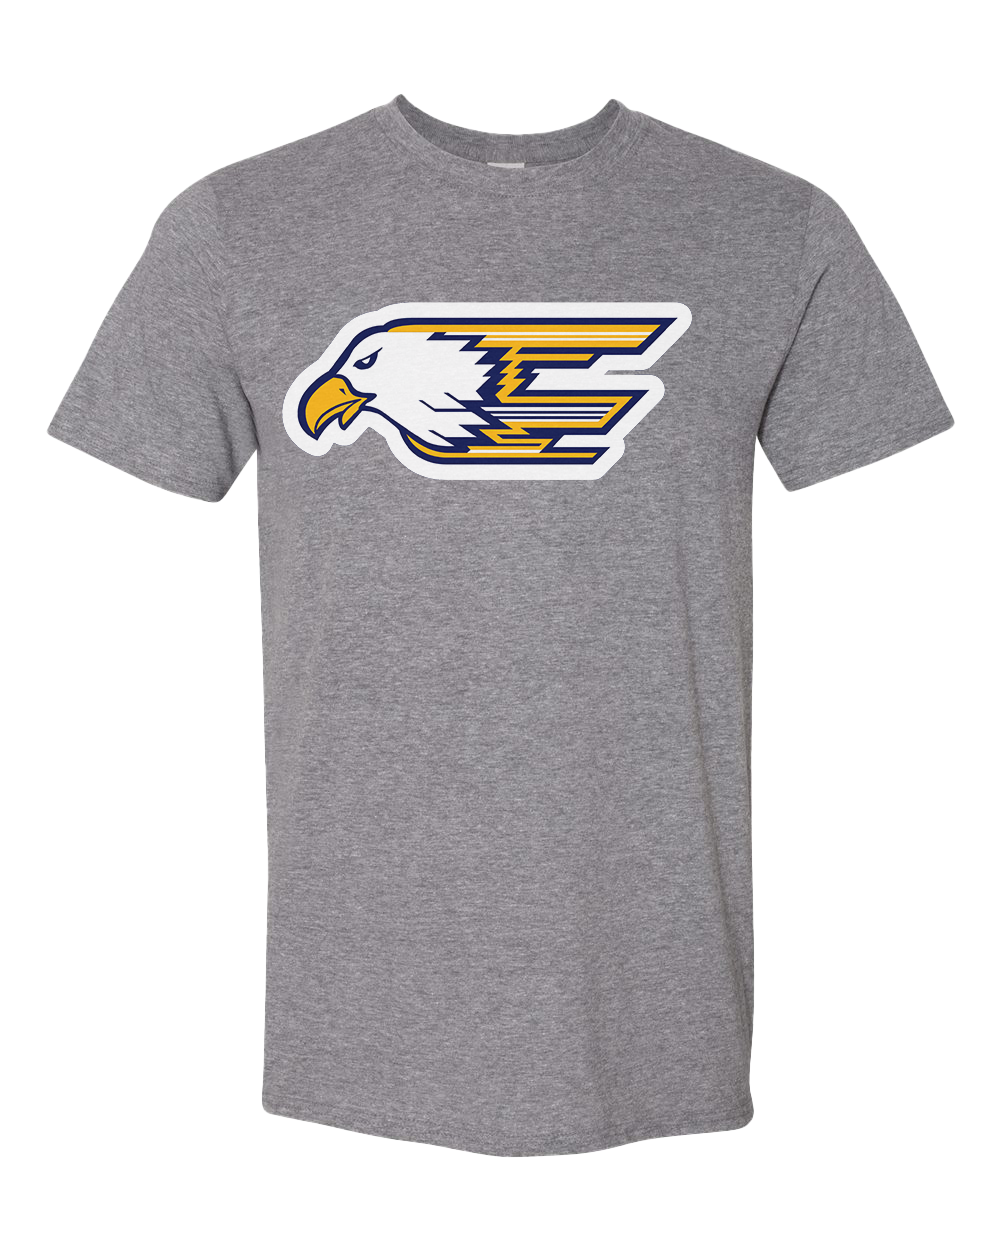 Delta Eagles Plain Logo Tshirt - Graphite Heather